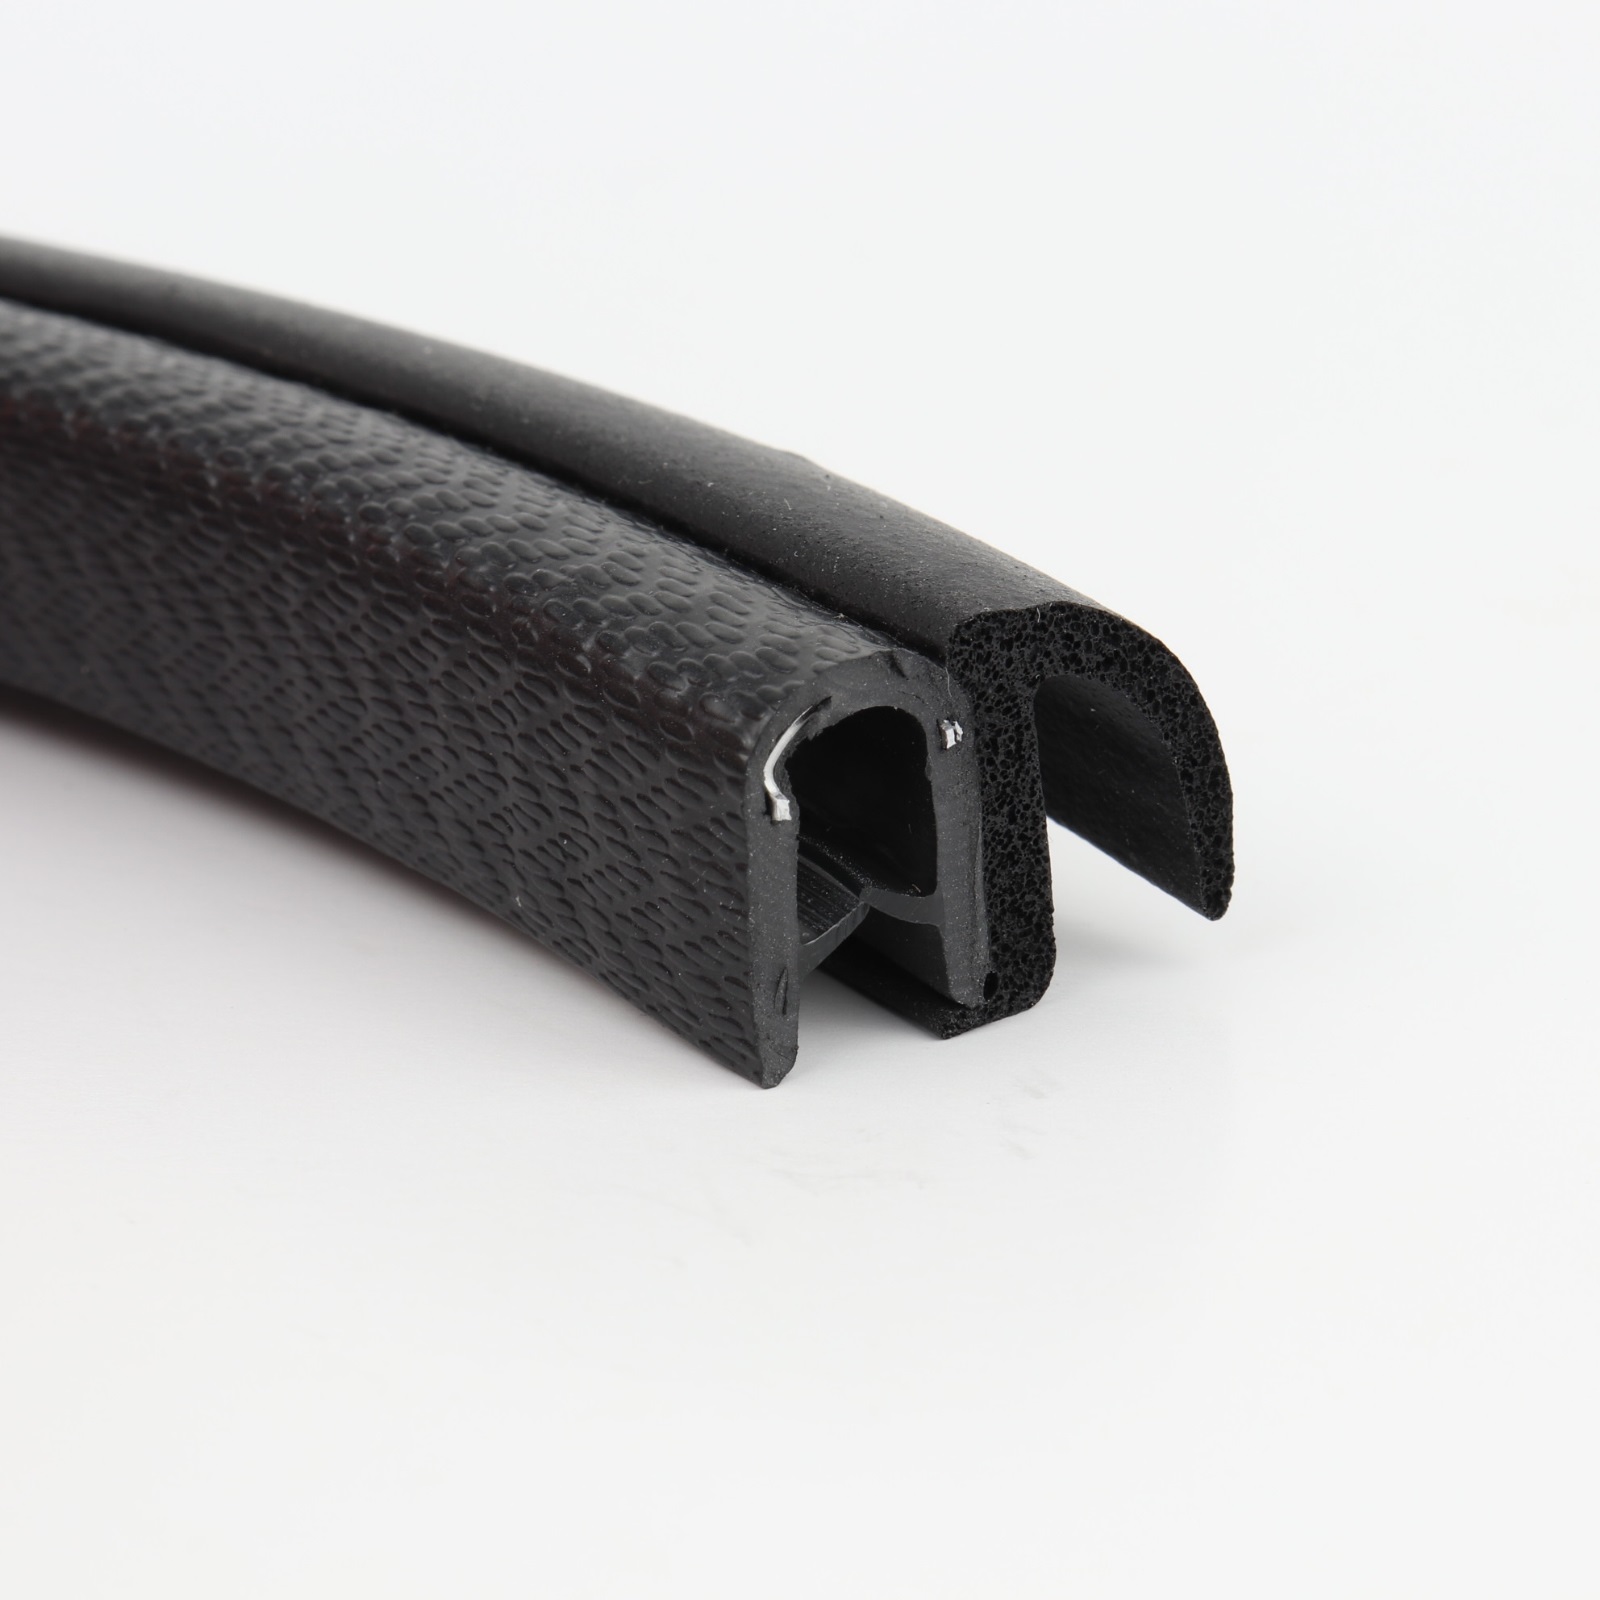 Kantenschutz-Dichtprofil - PVC/EPDM - mit Dichtlippe seitlich - Klemmbereich 1-4mm